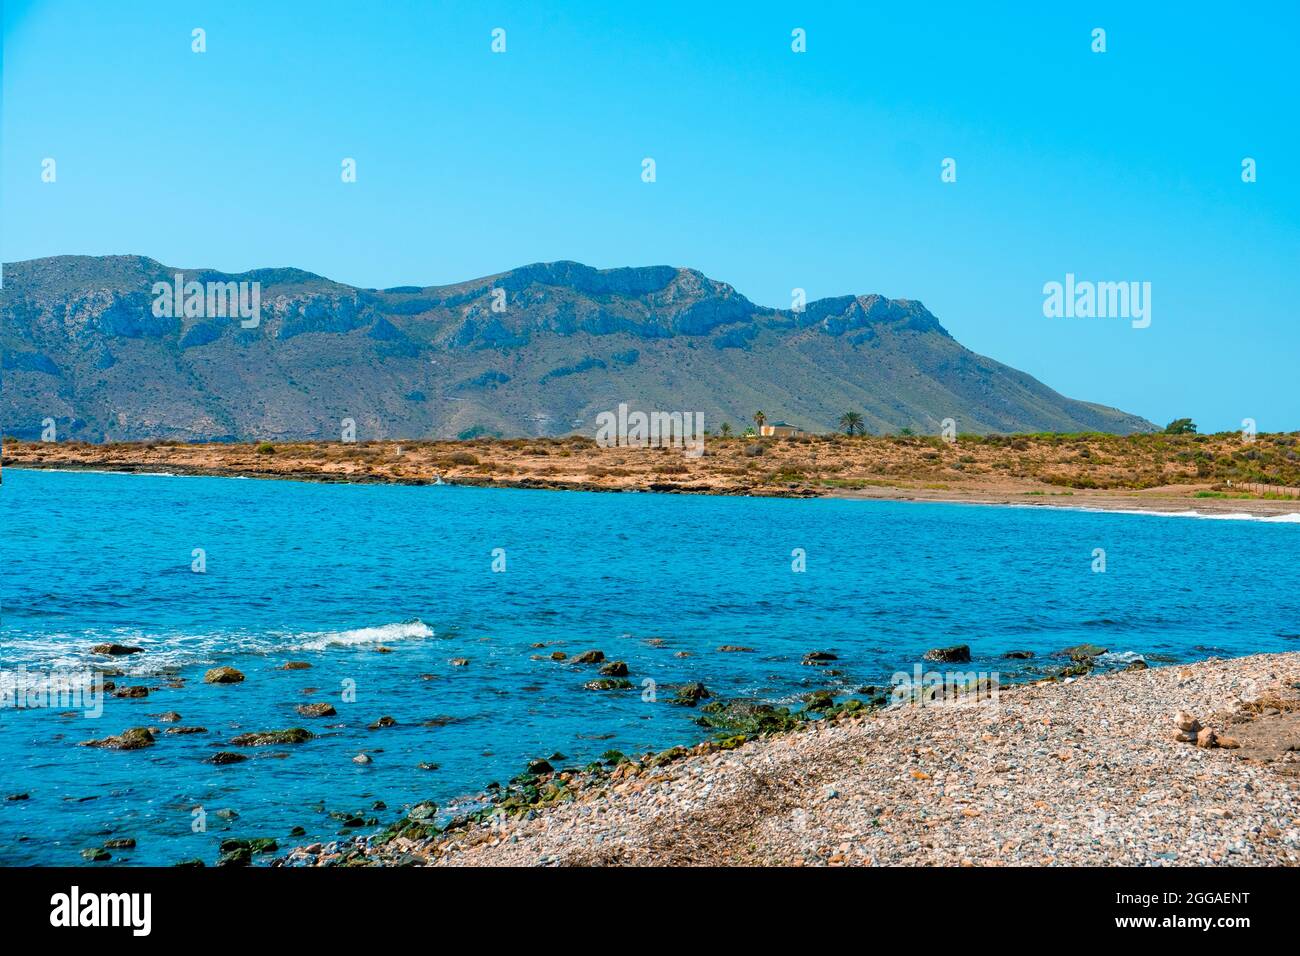 Vue sur la plage d'El Rafal, à Aguilas, sur la côte de la Costa Calida, région de Murcie, Espagne, mettant en évidence la montagne du cap Cope en arrière-plan Banque D'Images